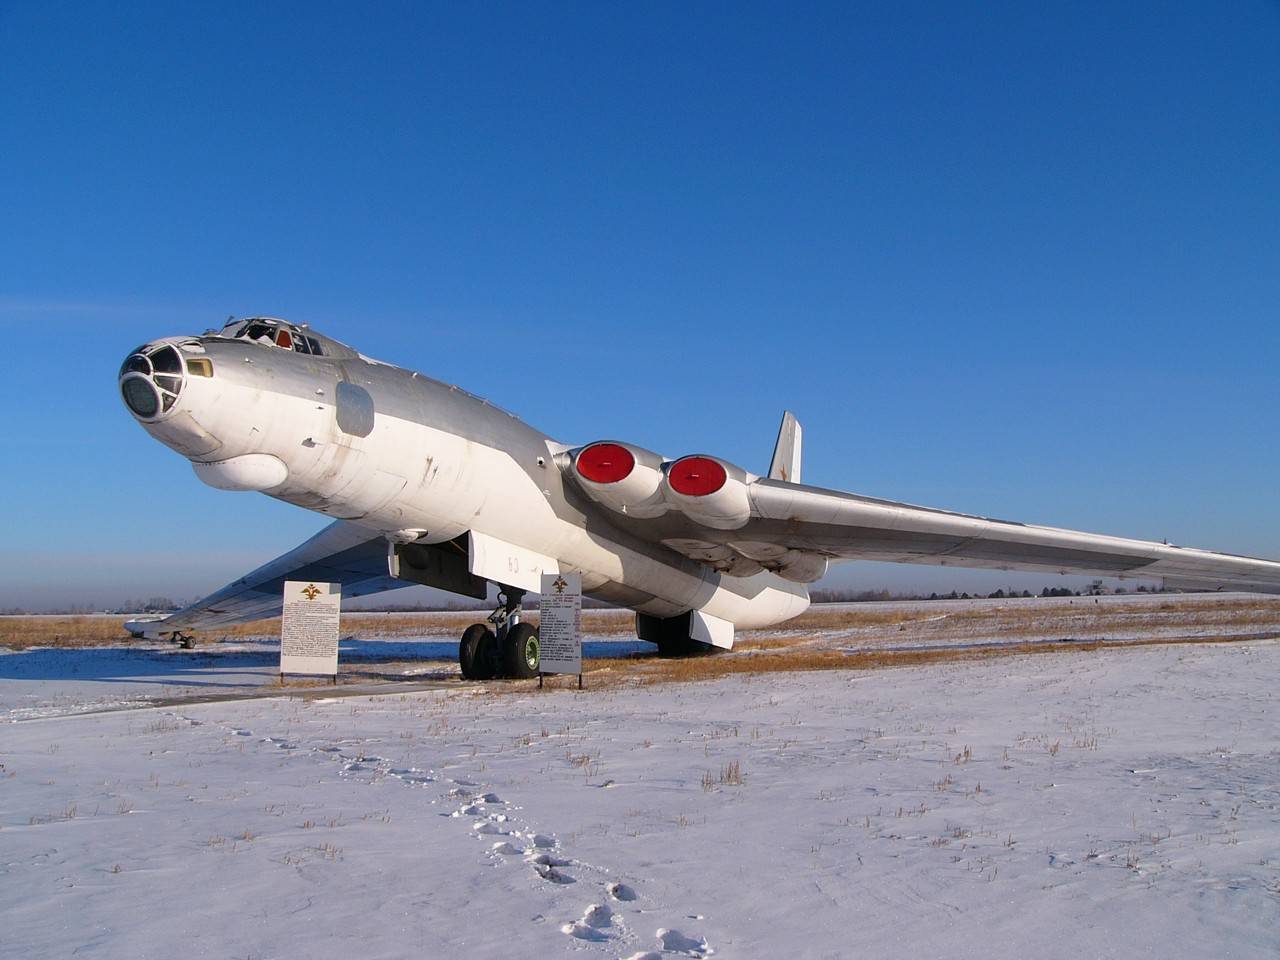 Советский М-4. Первый в мире стратегический реактивный бомбардировщик